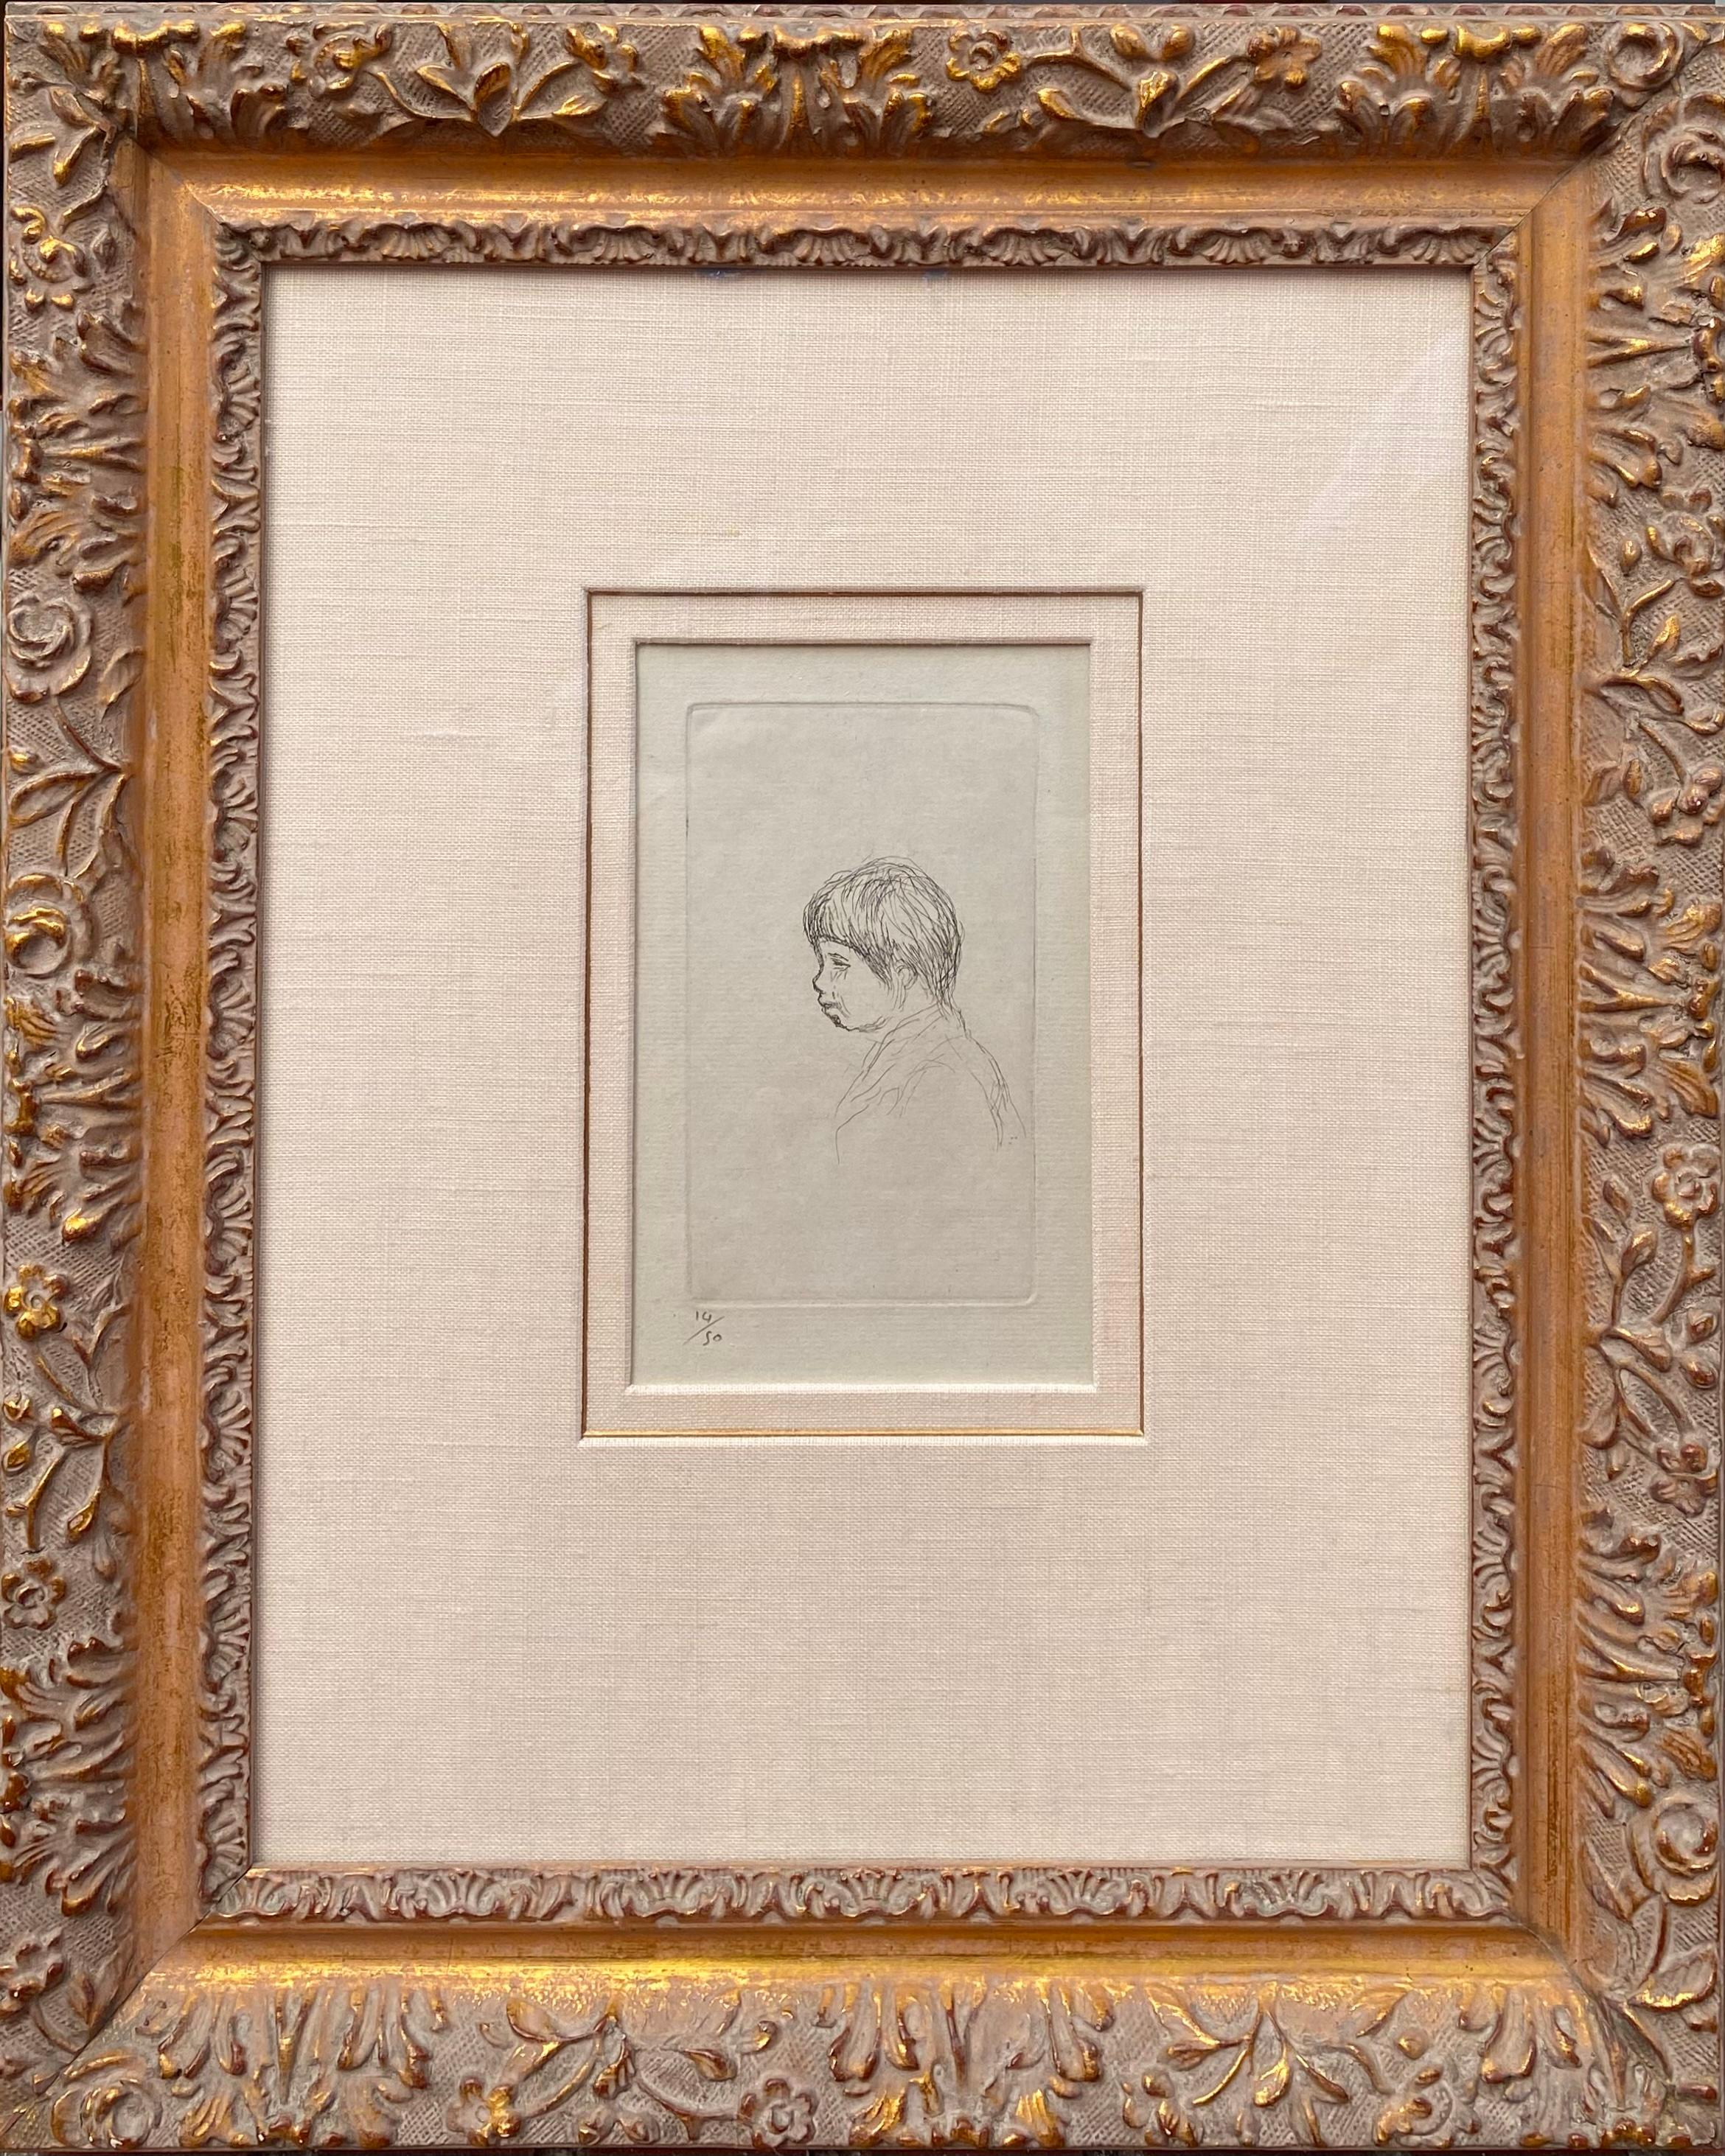 
Original-Radierung auf Archiv-Bütten von Claude Renoir, dem Sohn von Pierre August Renoir.

Pierre Auguste Renoir (franz. 1841-1919) 